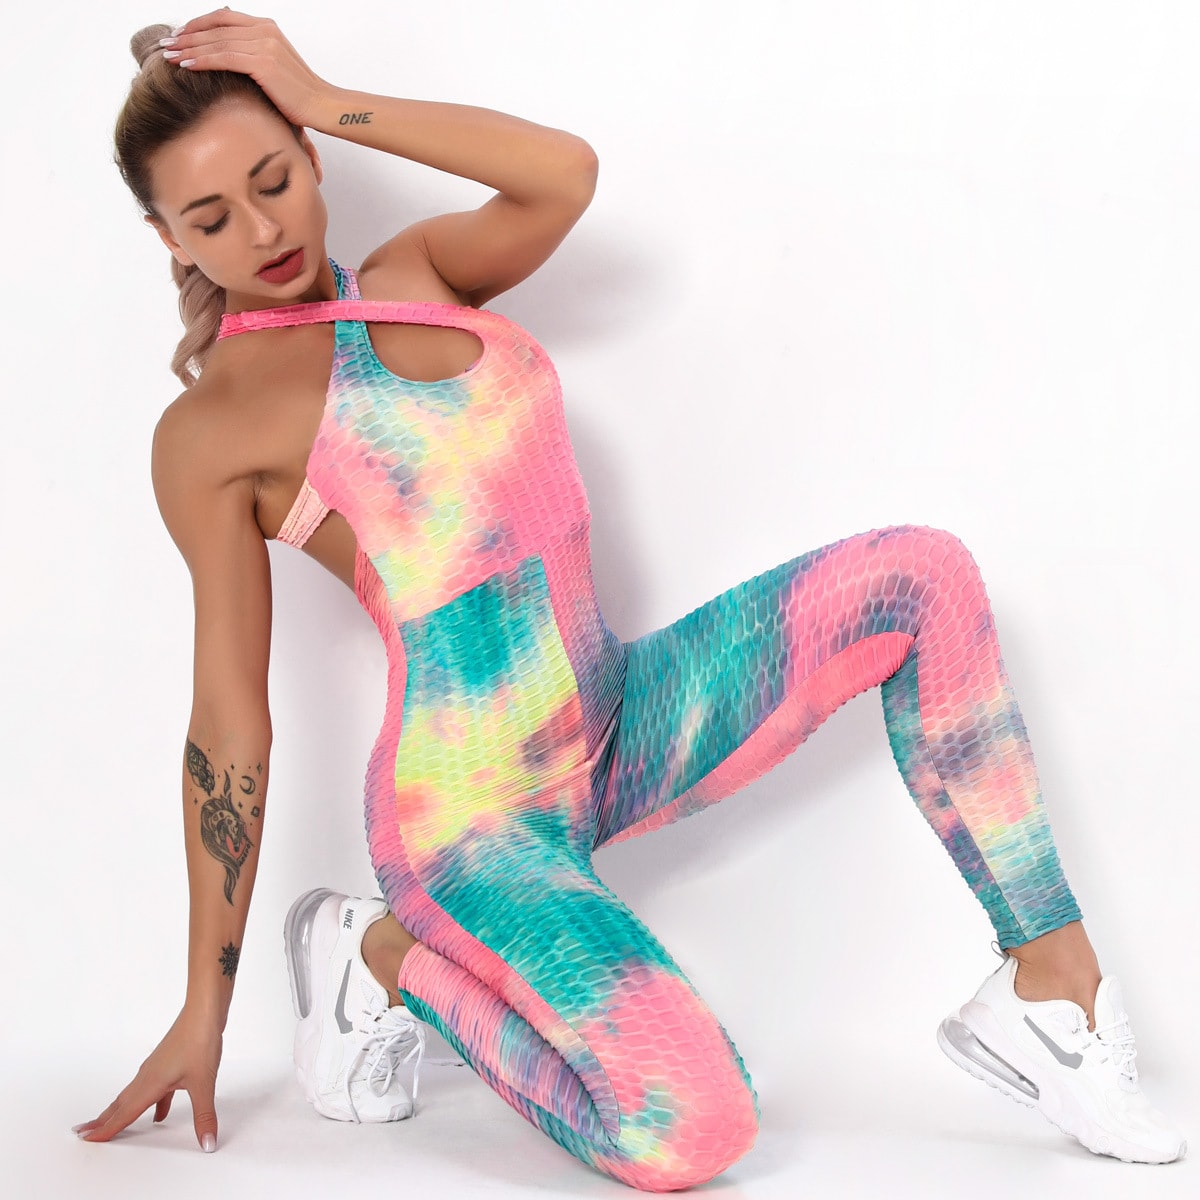 Set Yoga dengan Pewarna Yang Mulus Pakaian Olahraga Fitness Jacquard Bubblet Slim Fit Hip Raise Jumpsuit Pakaian Olahraga Set Legging Gym untuk Wanita